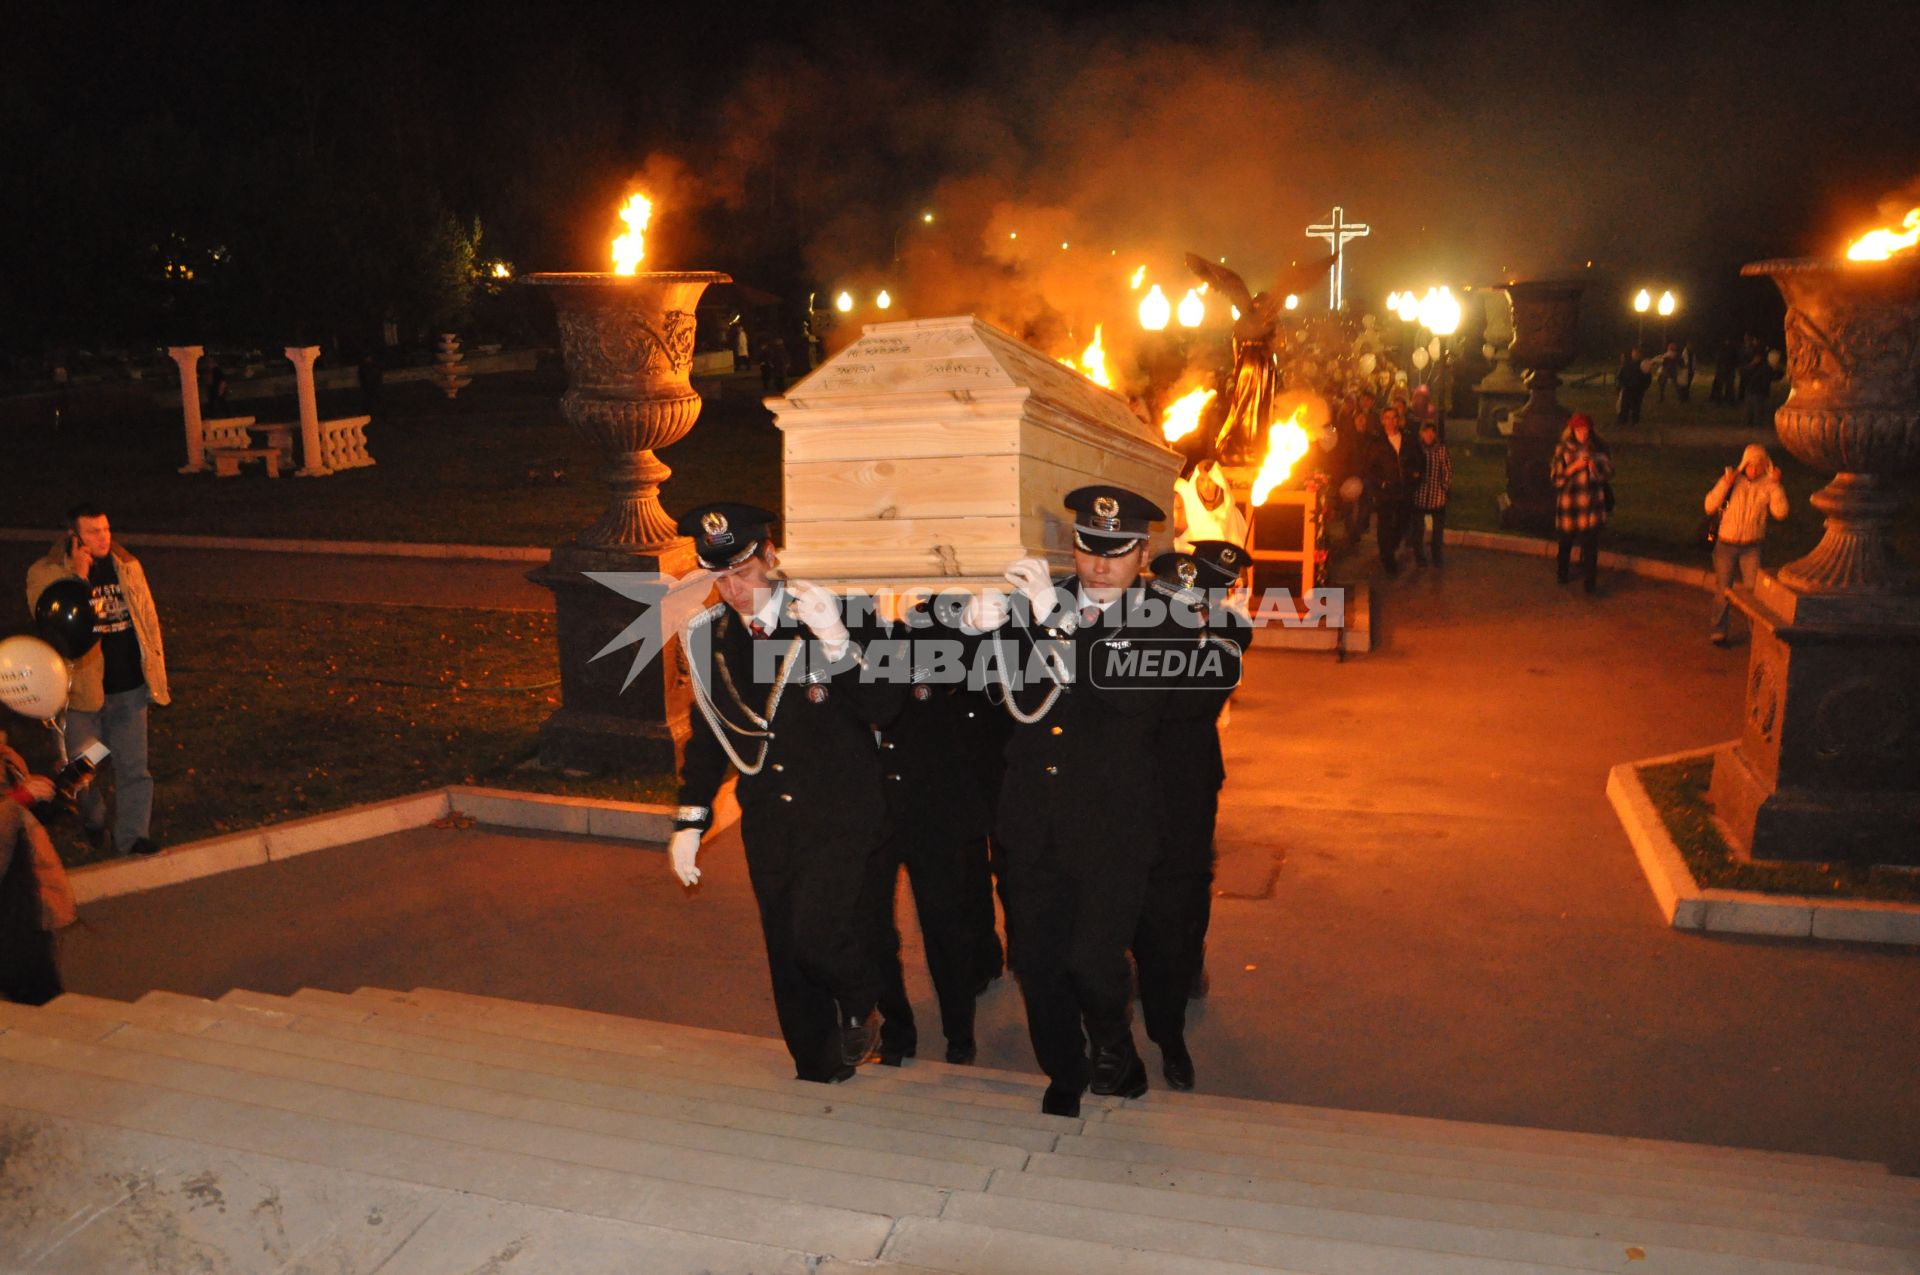 Антинаркотическая акция `Выбери жизнь` в Новосибирске. На снимке: мужчины в униформе для похоронных процессий несут гроб на руках.